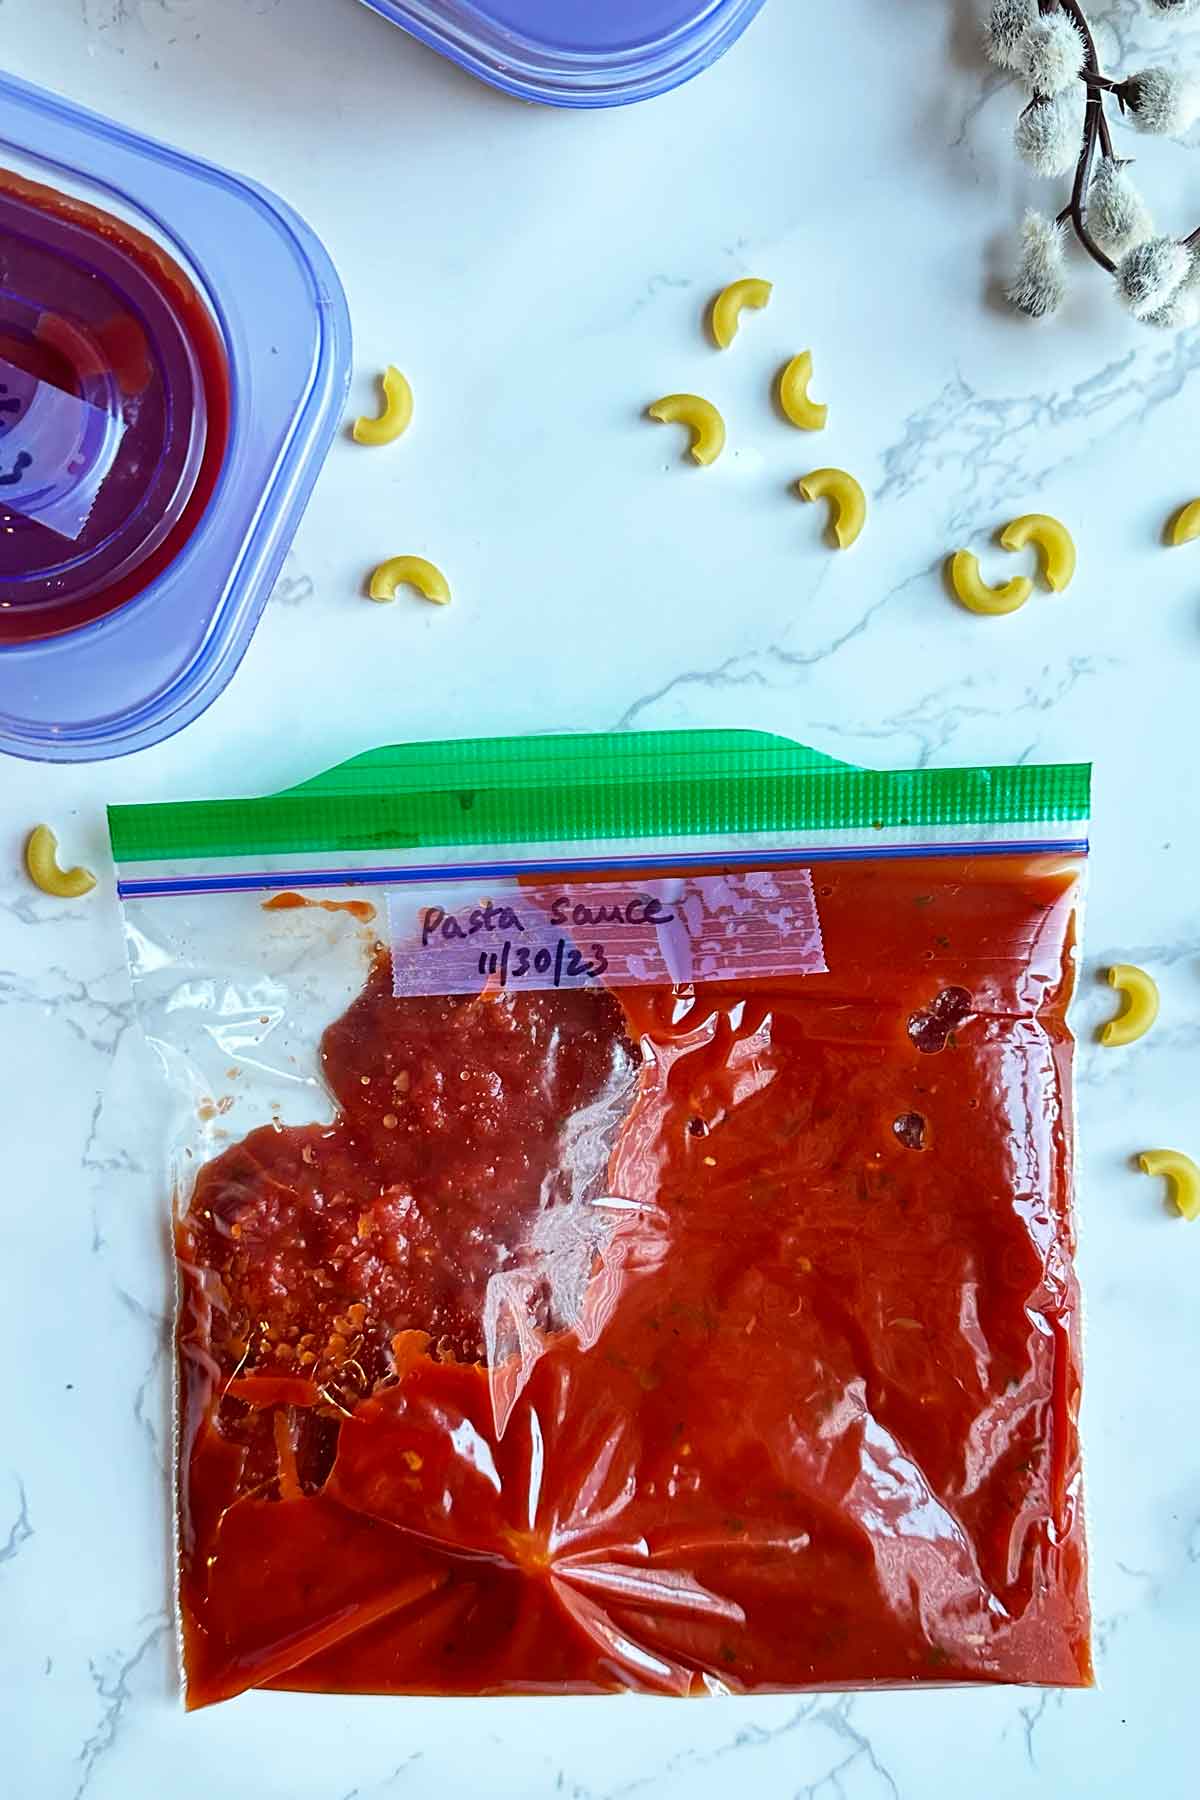 pasta sauce in ziplock bag.